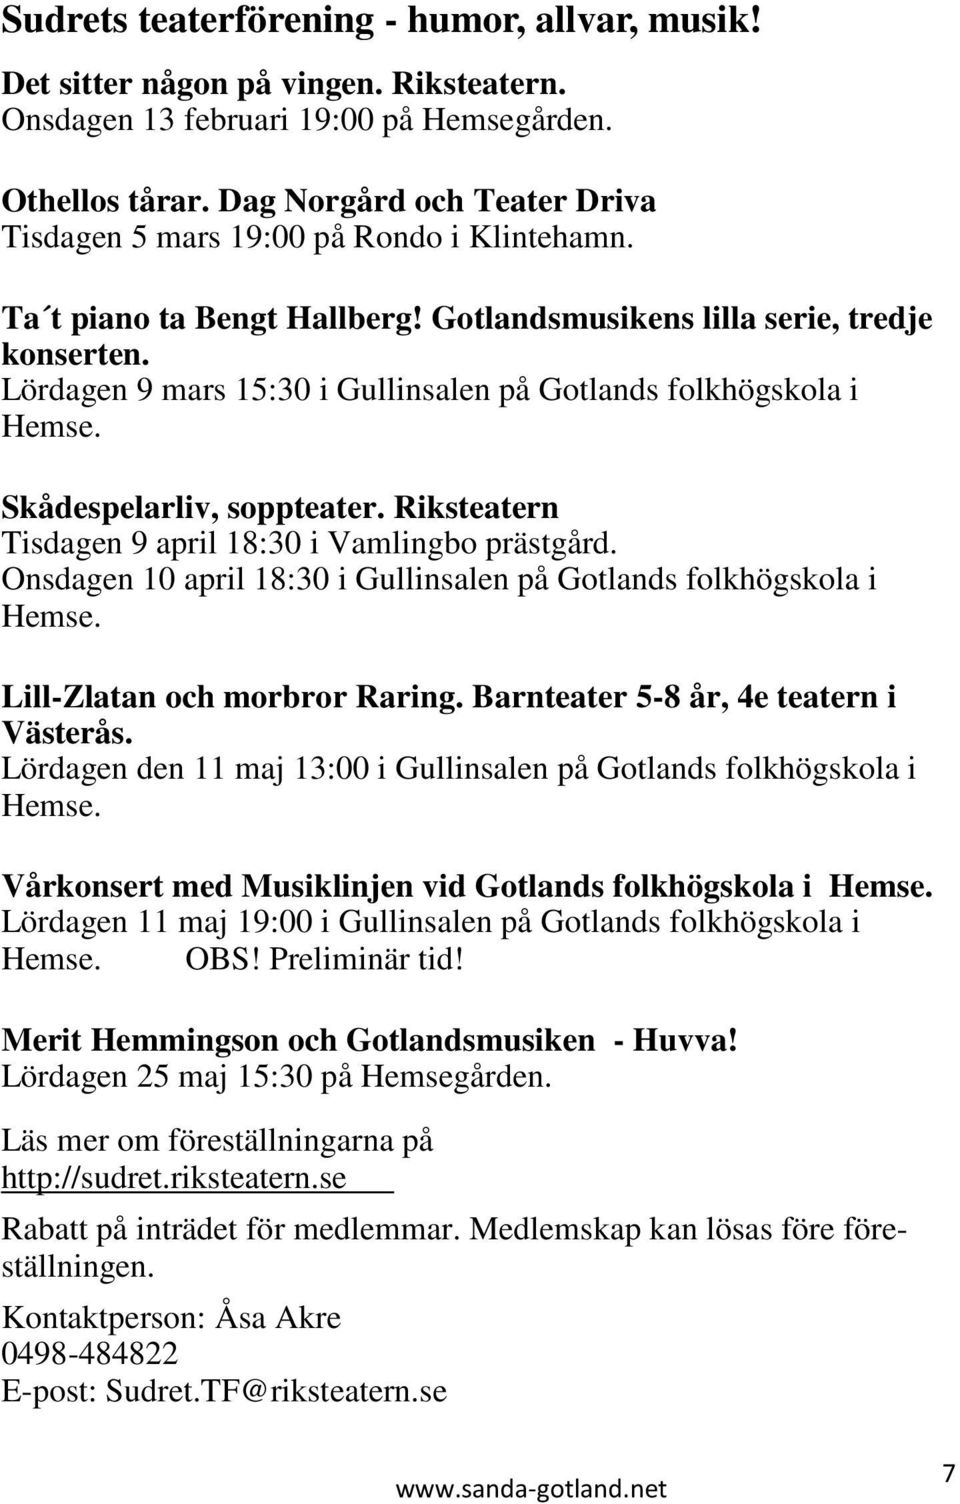 Lördagen 9 mars 15:30 i Gullinsalen på Gotlands folkhögskola i Hemse. Skådespelarliv, soppteater. Riksteatern Tisdagen 9 april 18:30 i Vamlingbo prästgård.